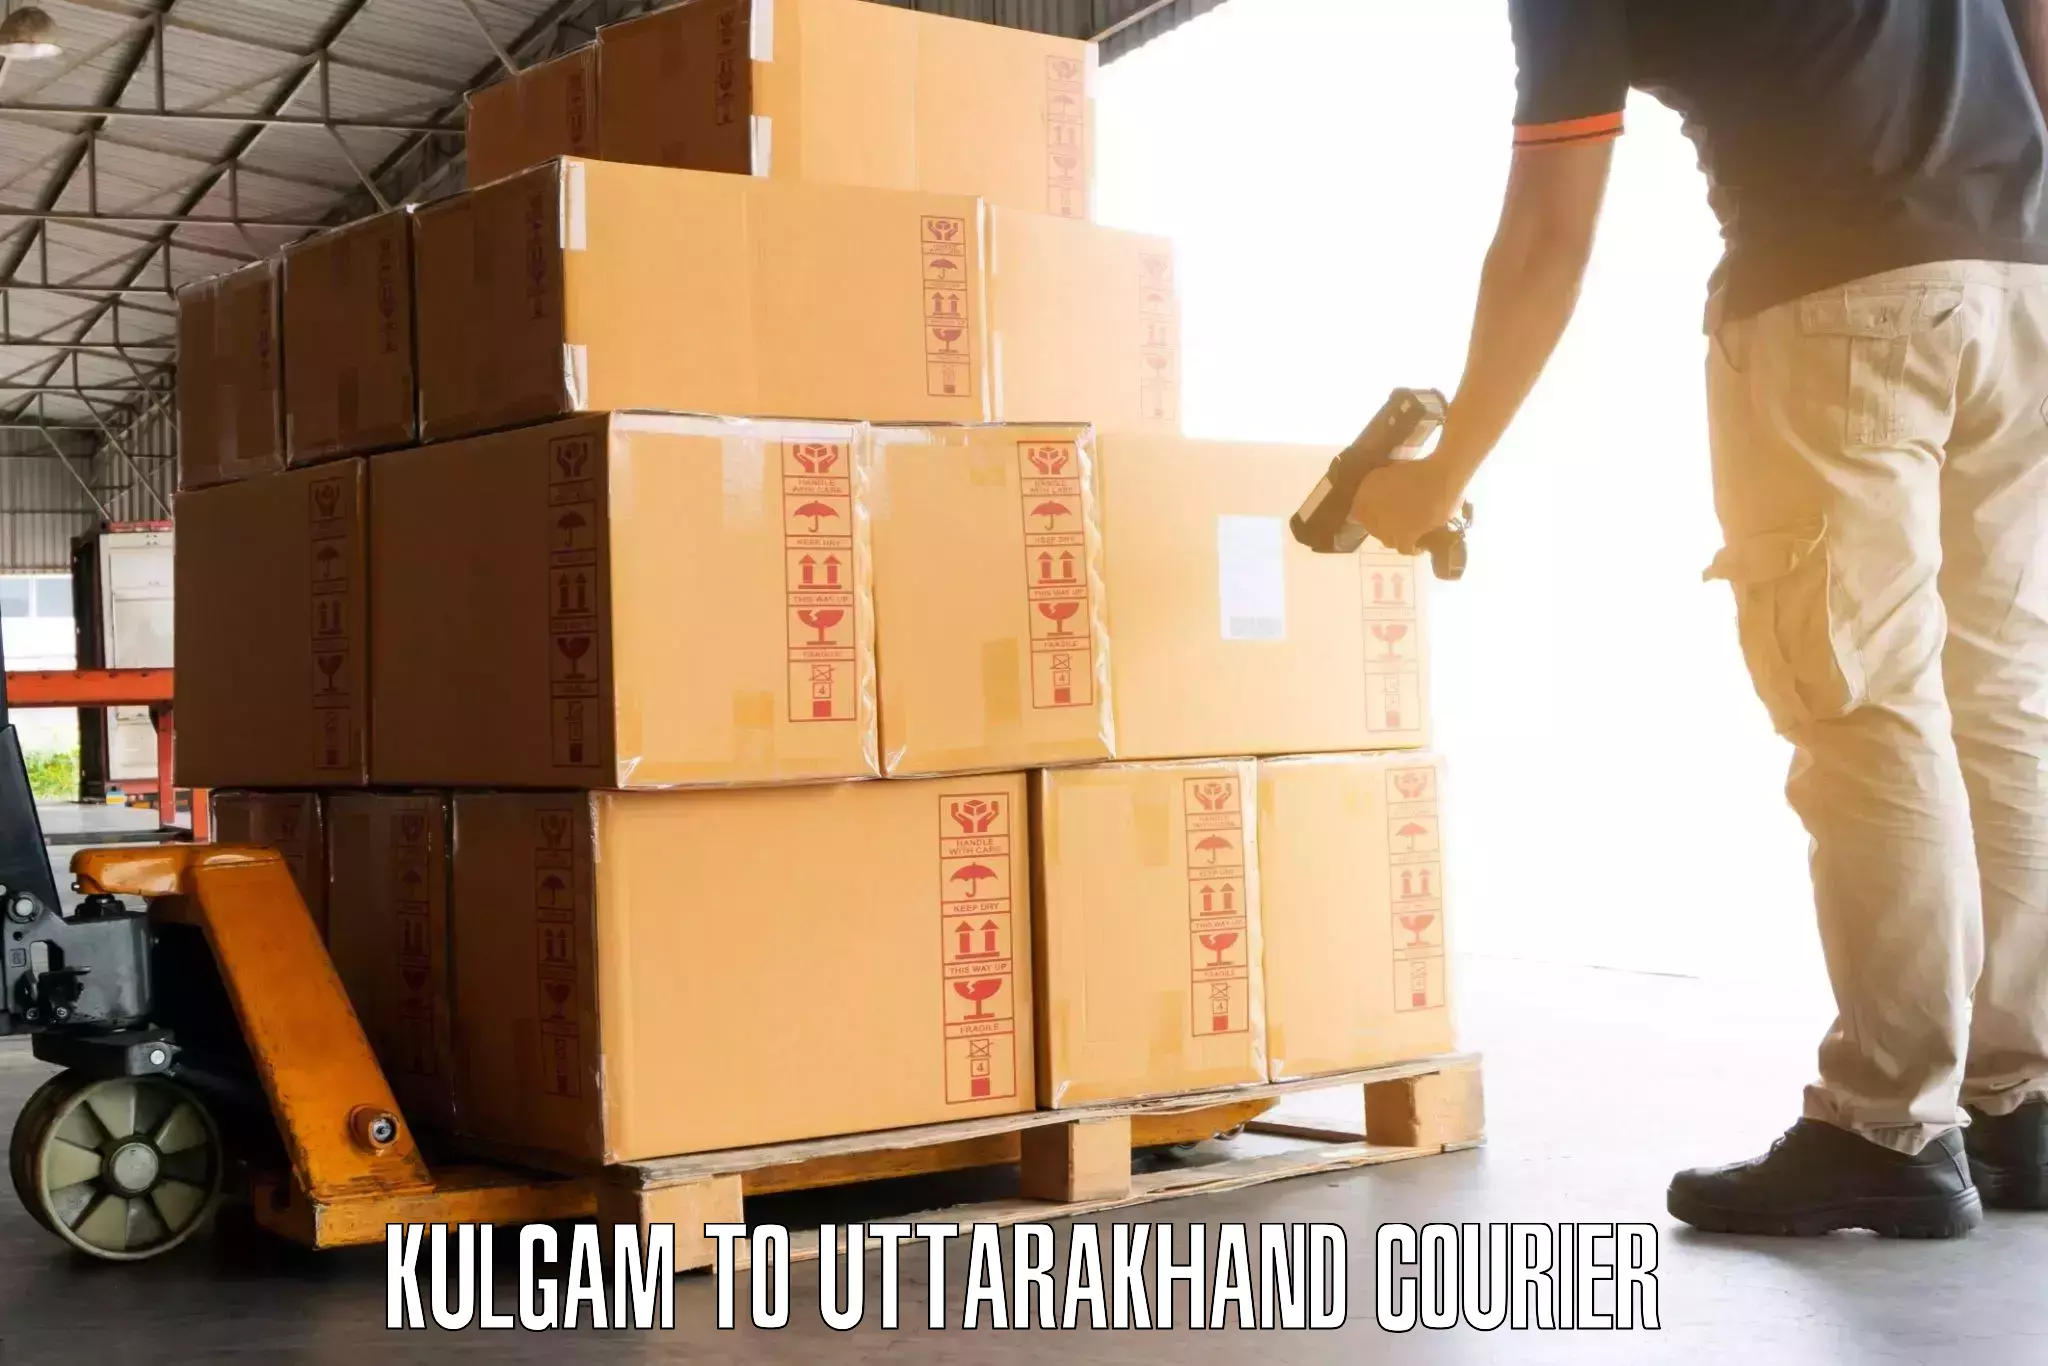 Luggage delivery operations Kulgam to Paithani